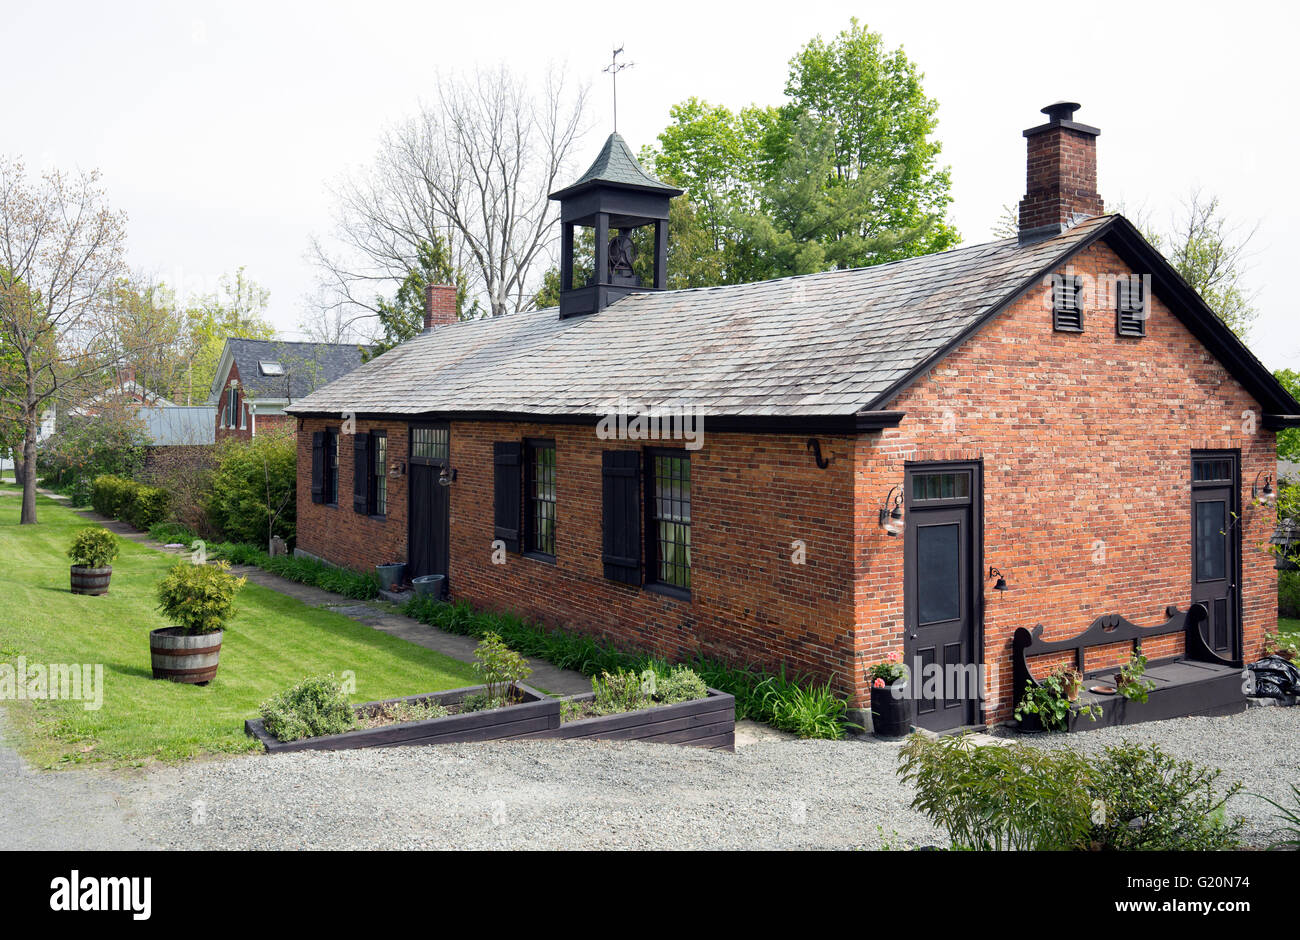 Maison en brique rouge 1800 accueil avec coupole Essex New York USA Nord Adirondack State Park Adirondacks Lake Champlain Banque D'Images